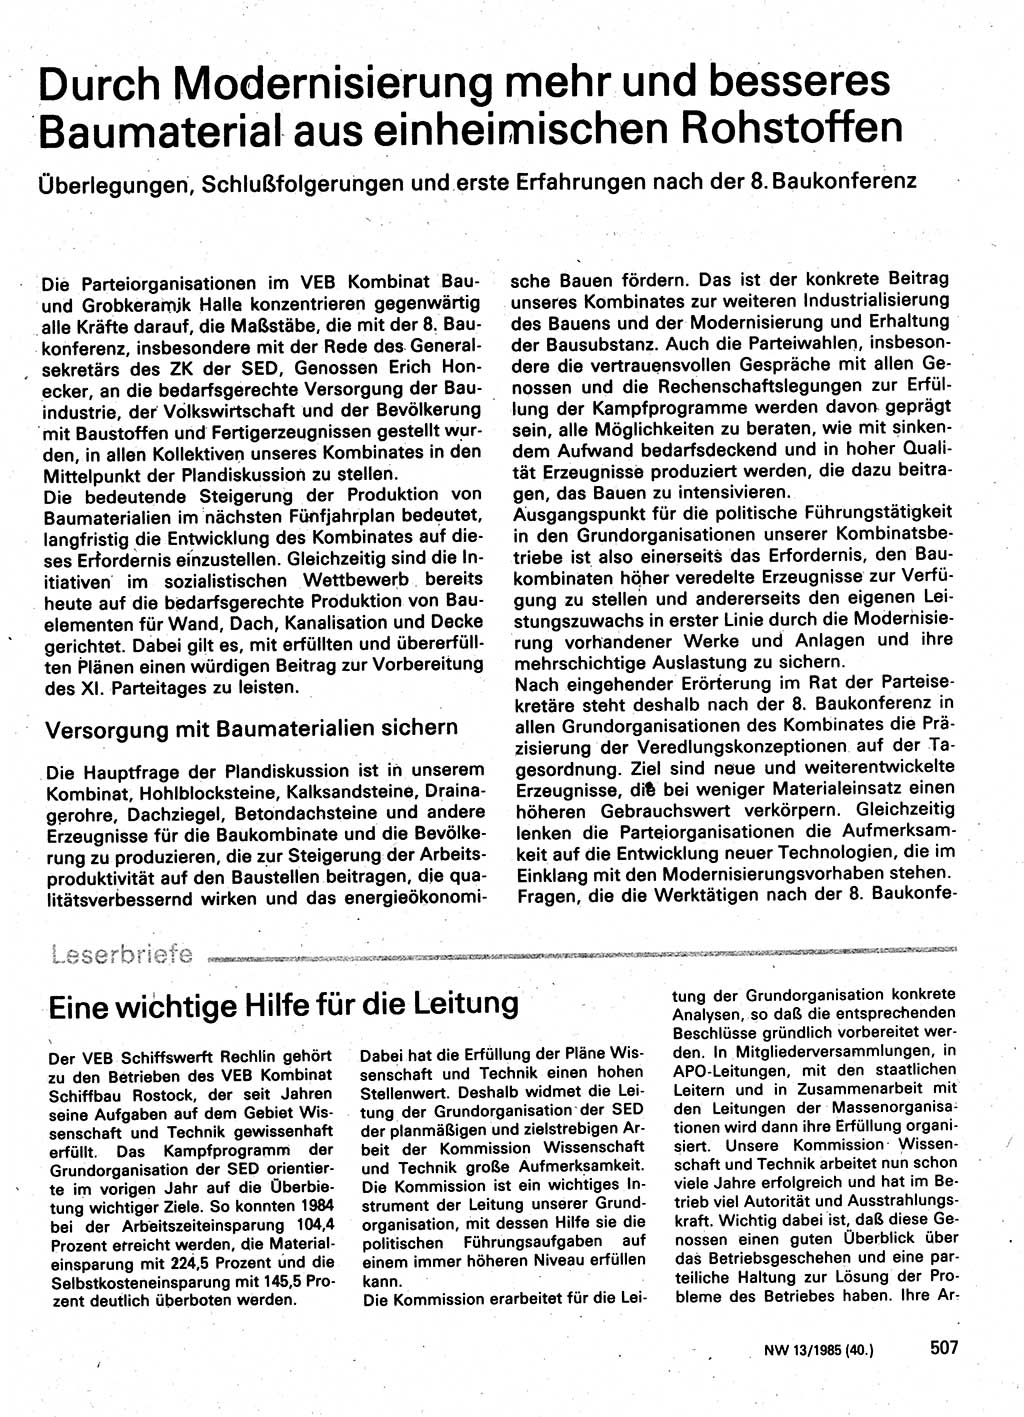 Neuer Weg (NW), Organ des Zentralkomitees (ZK) der SED (Sozialistische Einheitspartei Deutschlands) für Fragen des Parteilebens, 40. Jahrgang [Deutsche Demokratische Republik (DDR)] 1985, Seite 507 (NW ZK SED DDR 1985, S. 507)